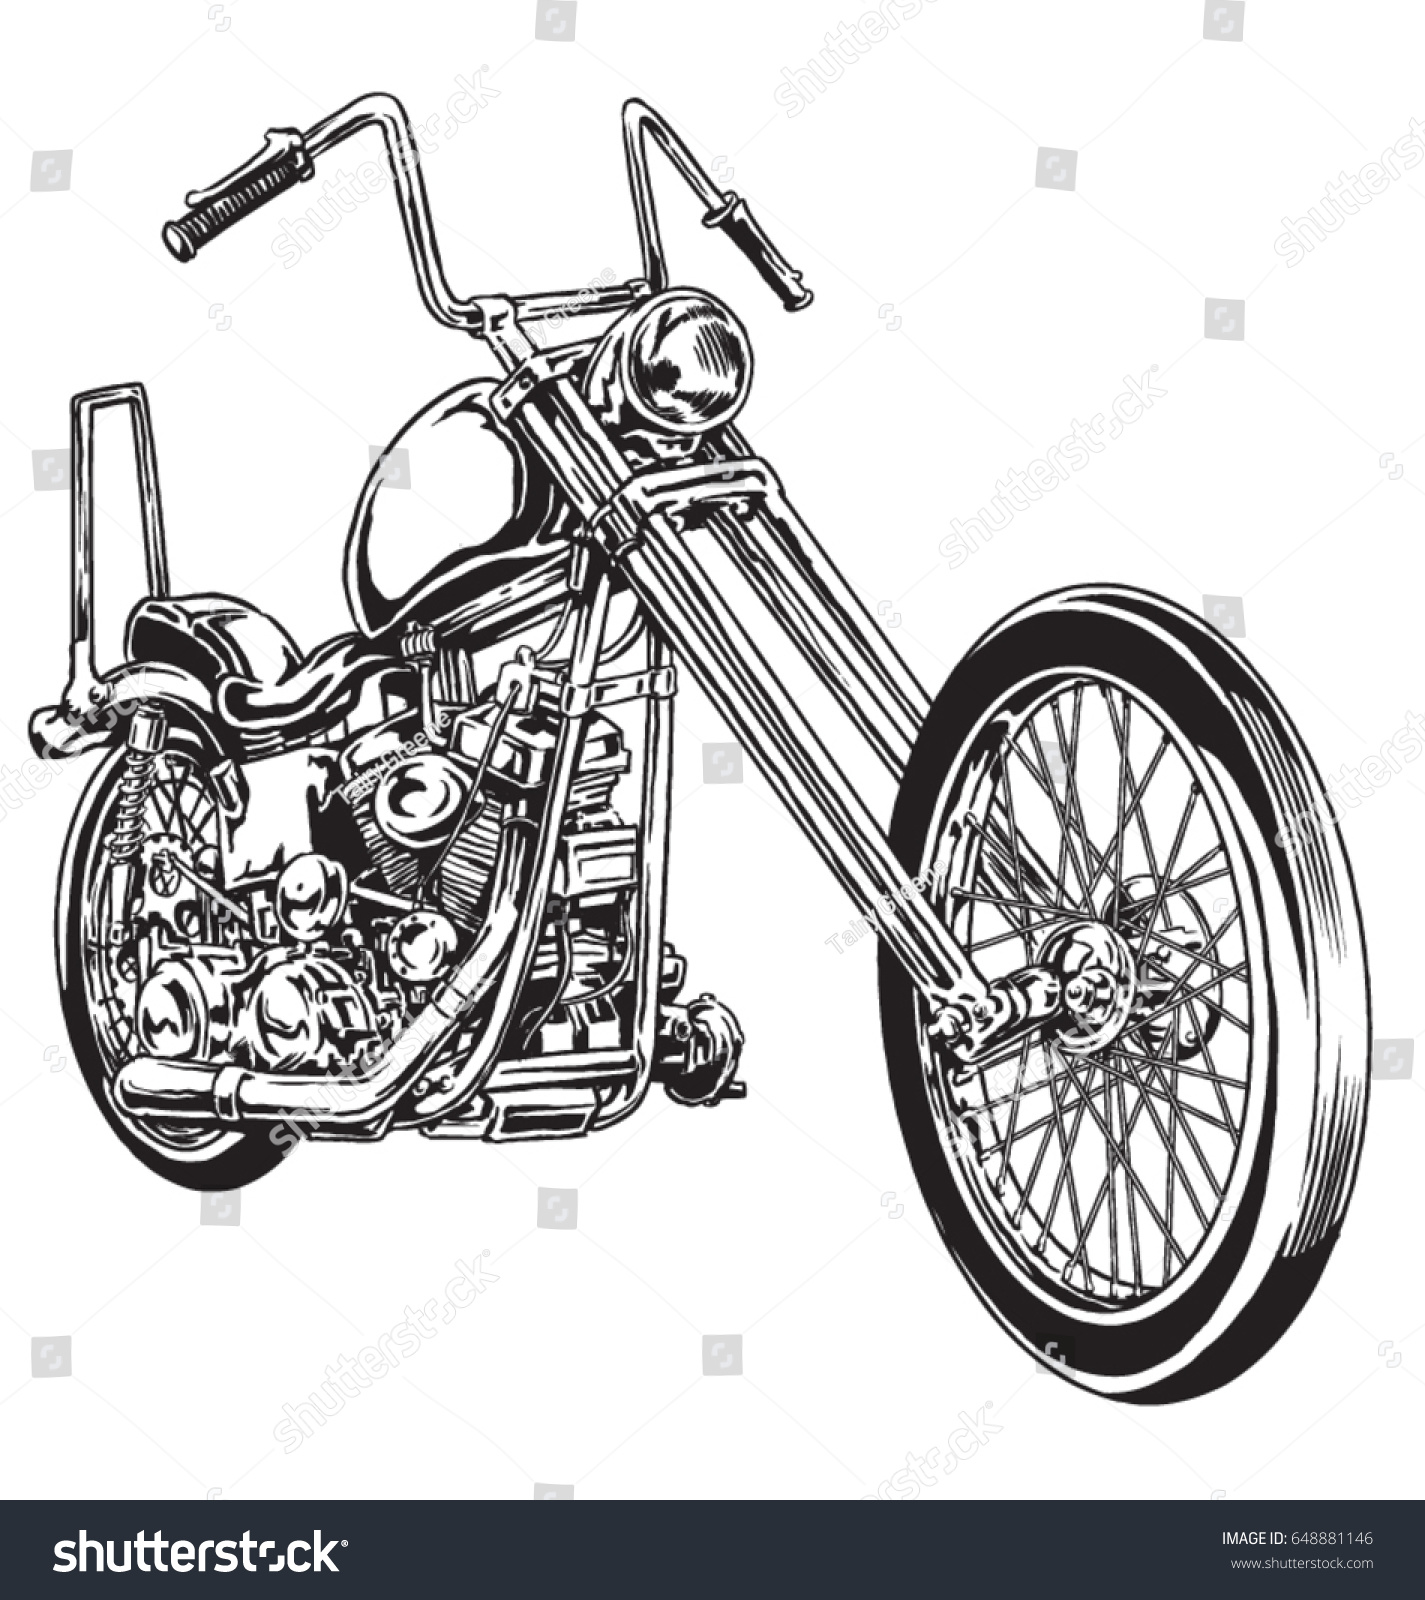 Motorcycle chopper 60 912 images, photos et images vectorielles de